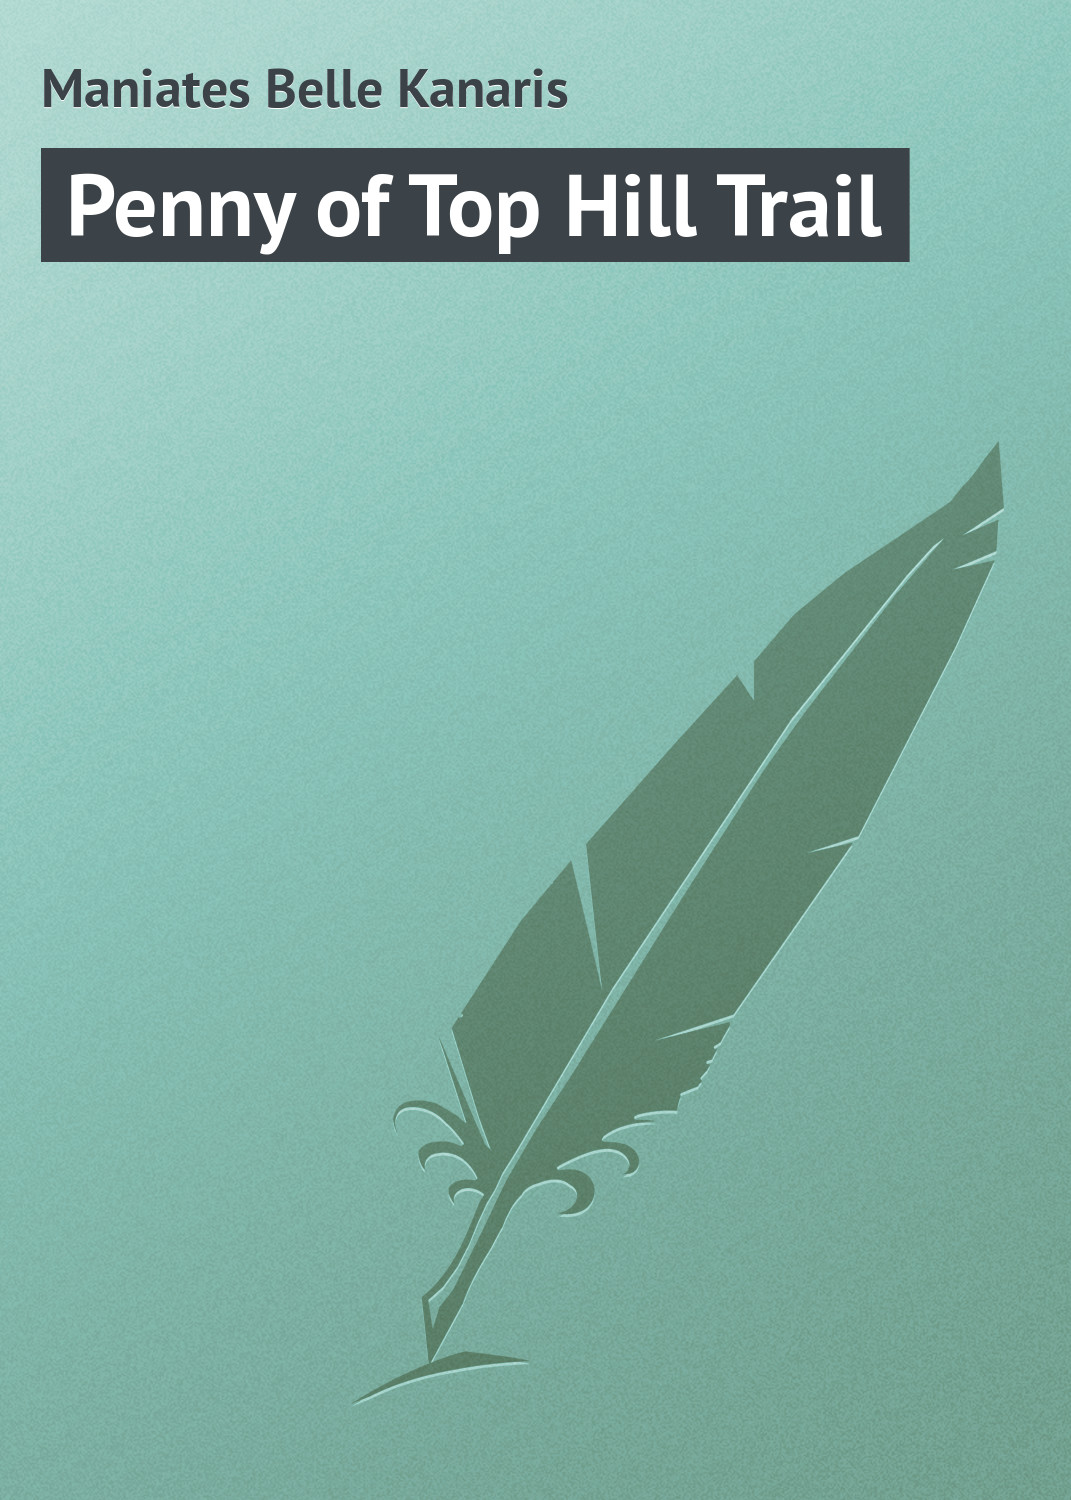 Книга Penny of Top Hill Trail из серии , созданная Belle Maniates, может относится к жанру Зарубежные приключения, Зарубежная классика, Иностранные языки. Стоимость электронной книги Penny of Top Hill Trail с идентификатором 23149931 составляет 5.99 руб.